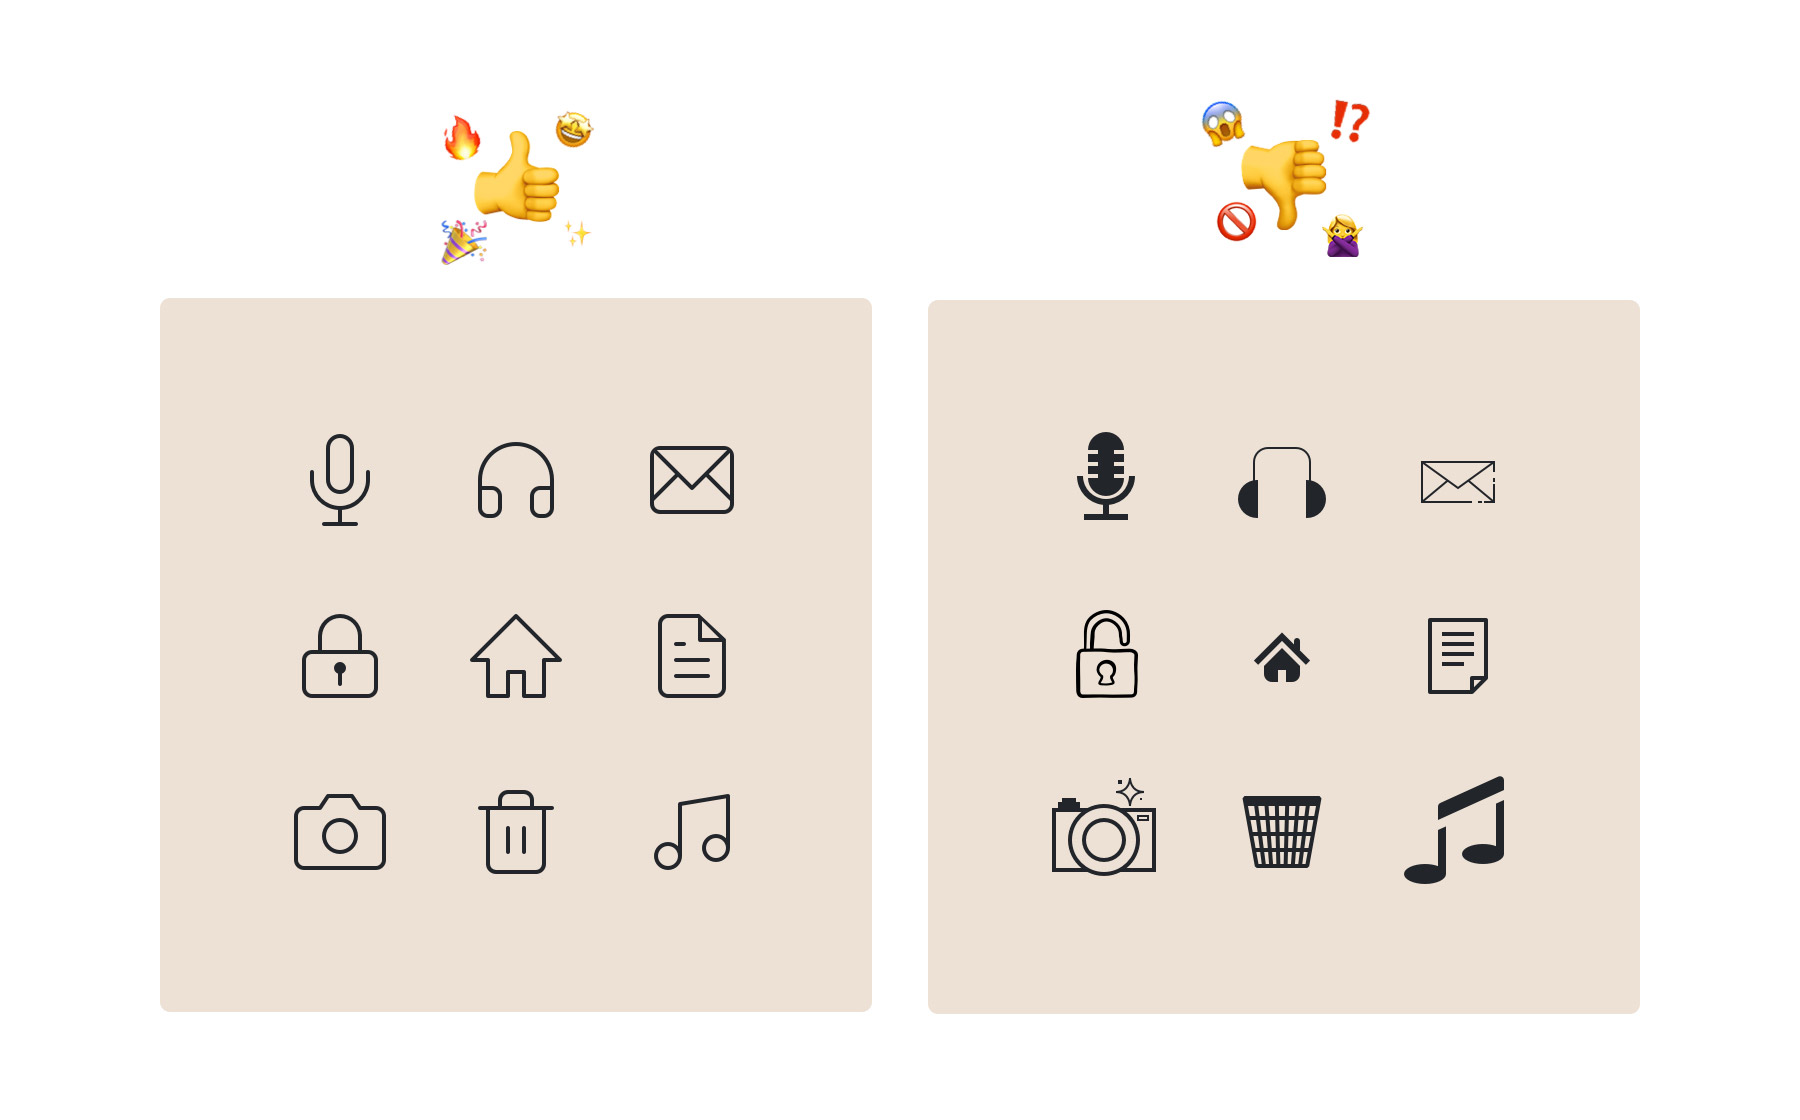 Konsekvent stil på ikoner och piktogram - UX och design-principer